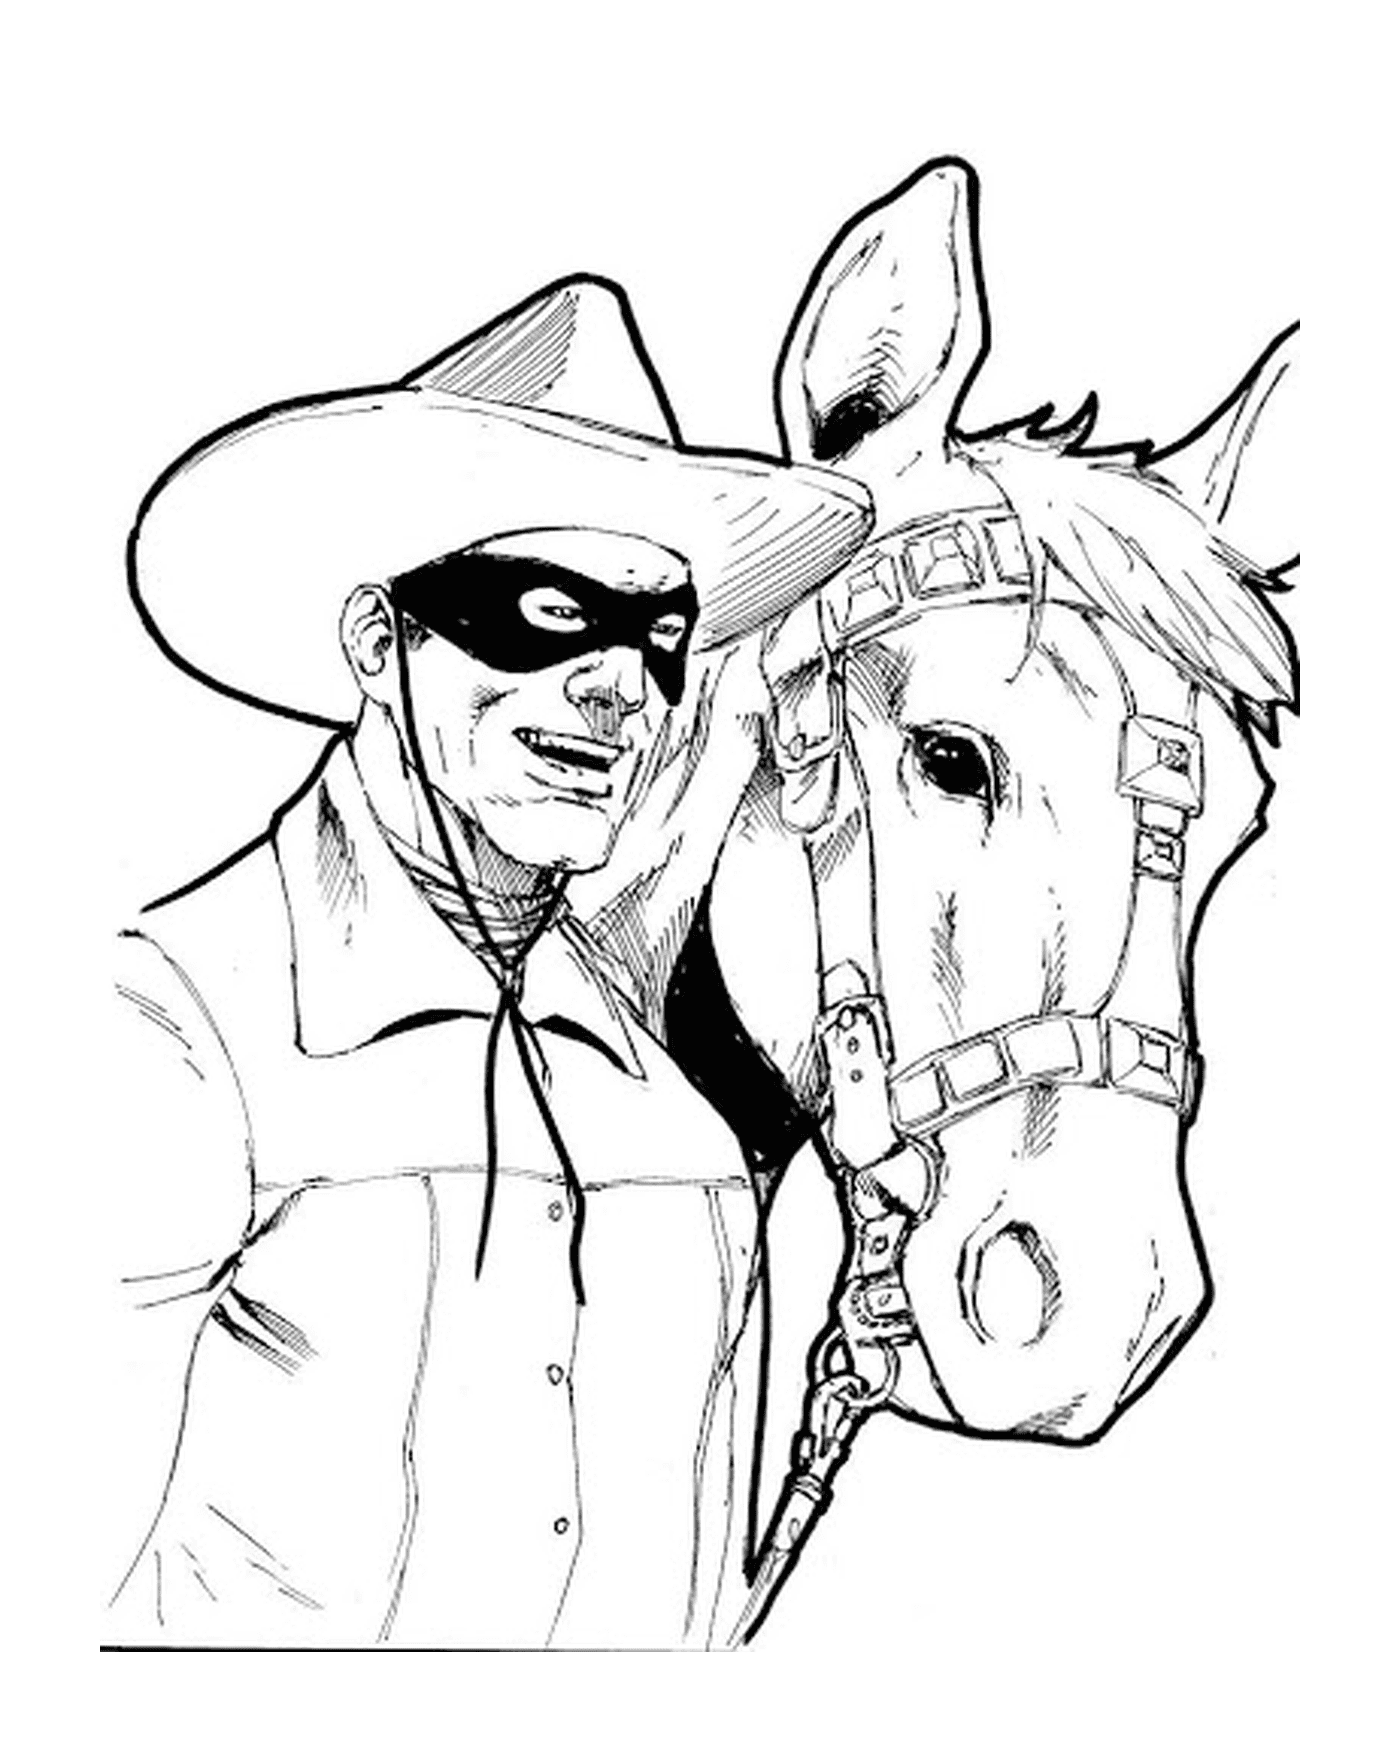  Zorro e seu cavalo realista 